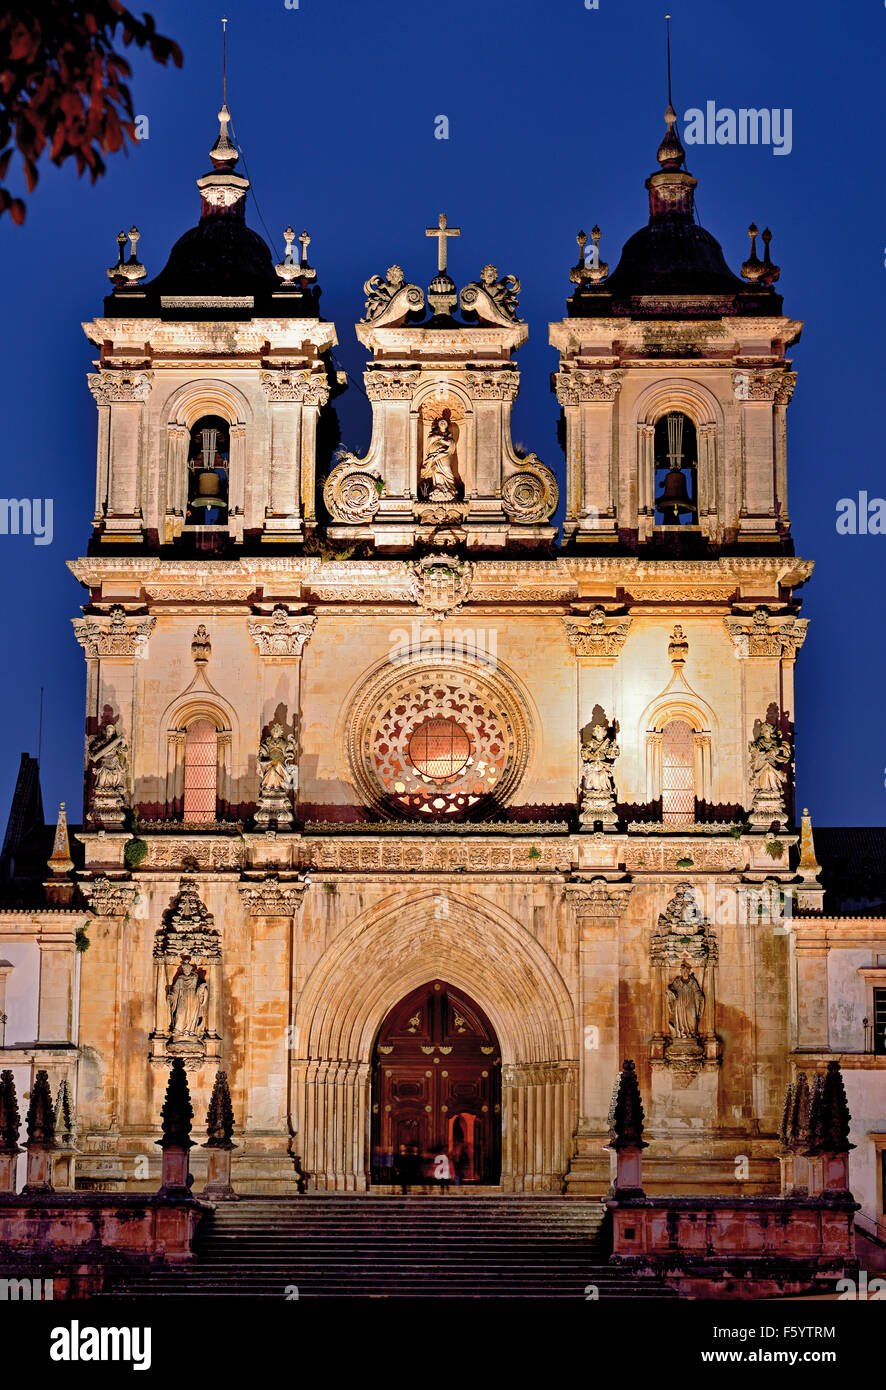 Portugal : vue de la nuit de l'abbaye Santa Maria d'Alcobaça Banque D'Images